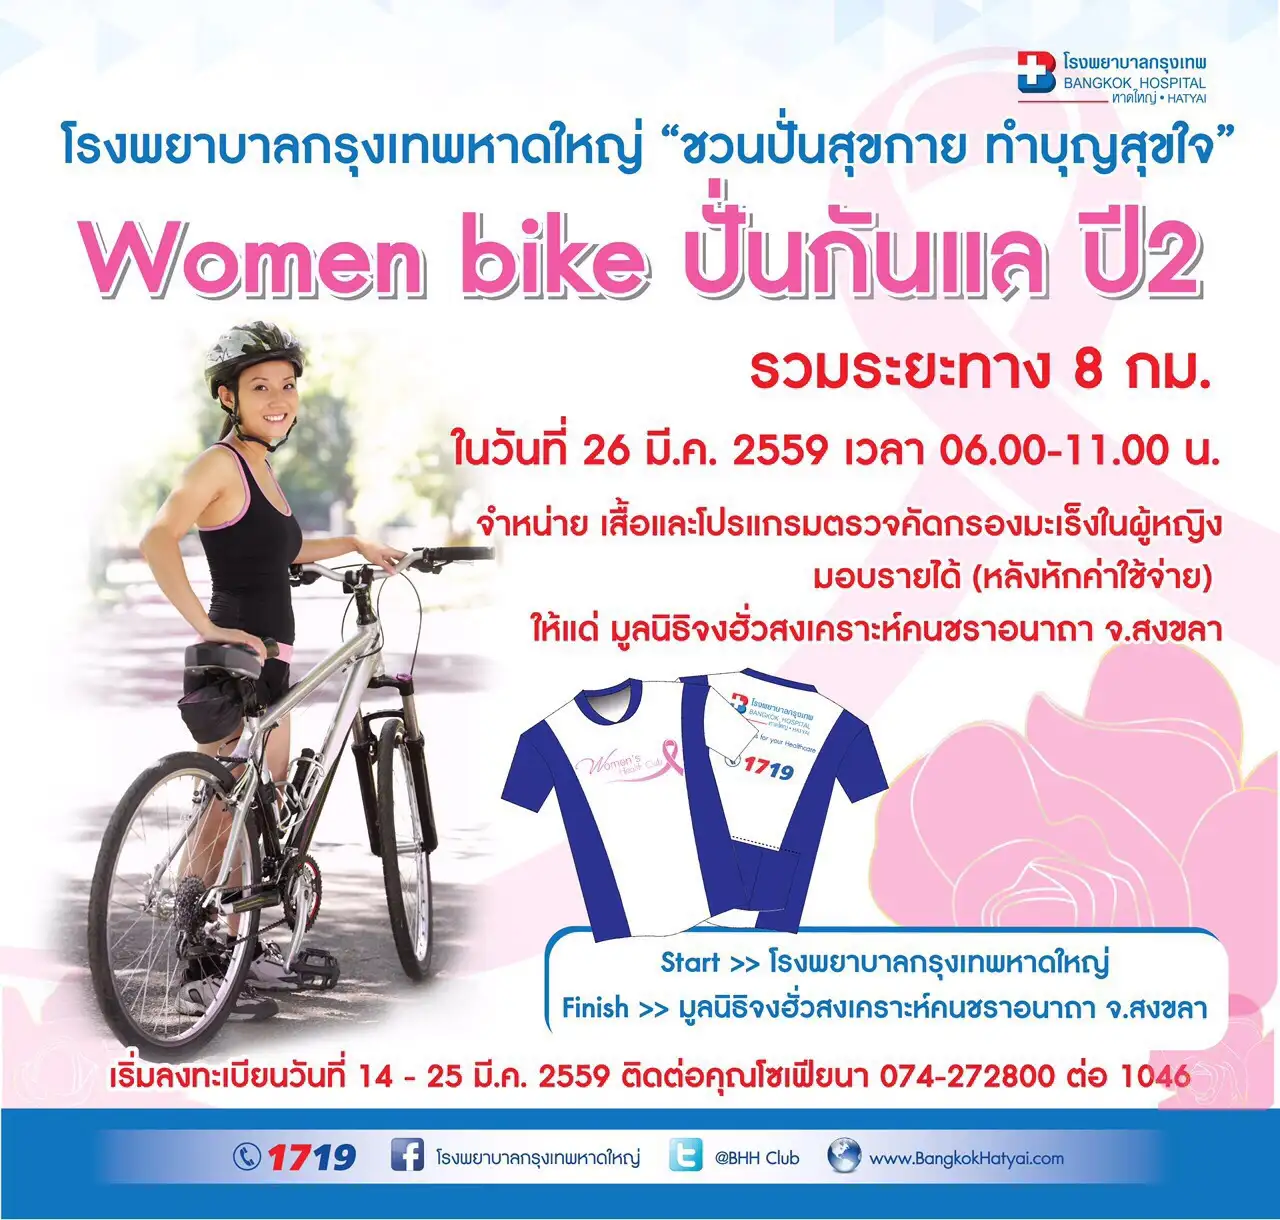 รพ.กรุงเทพหาดใหญ่ เชิญคุณปั่นสุขกาย กับกิจกรรม Women bike ปั่นกันแล ปี 2